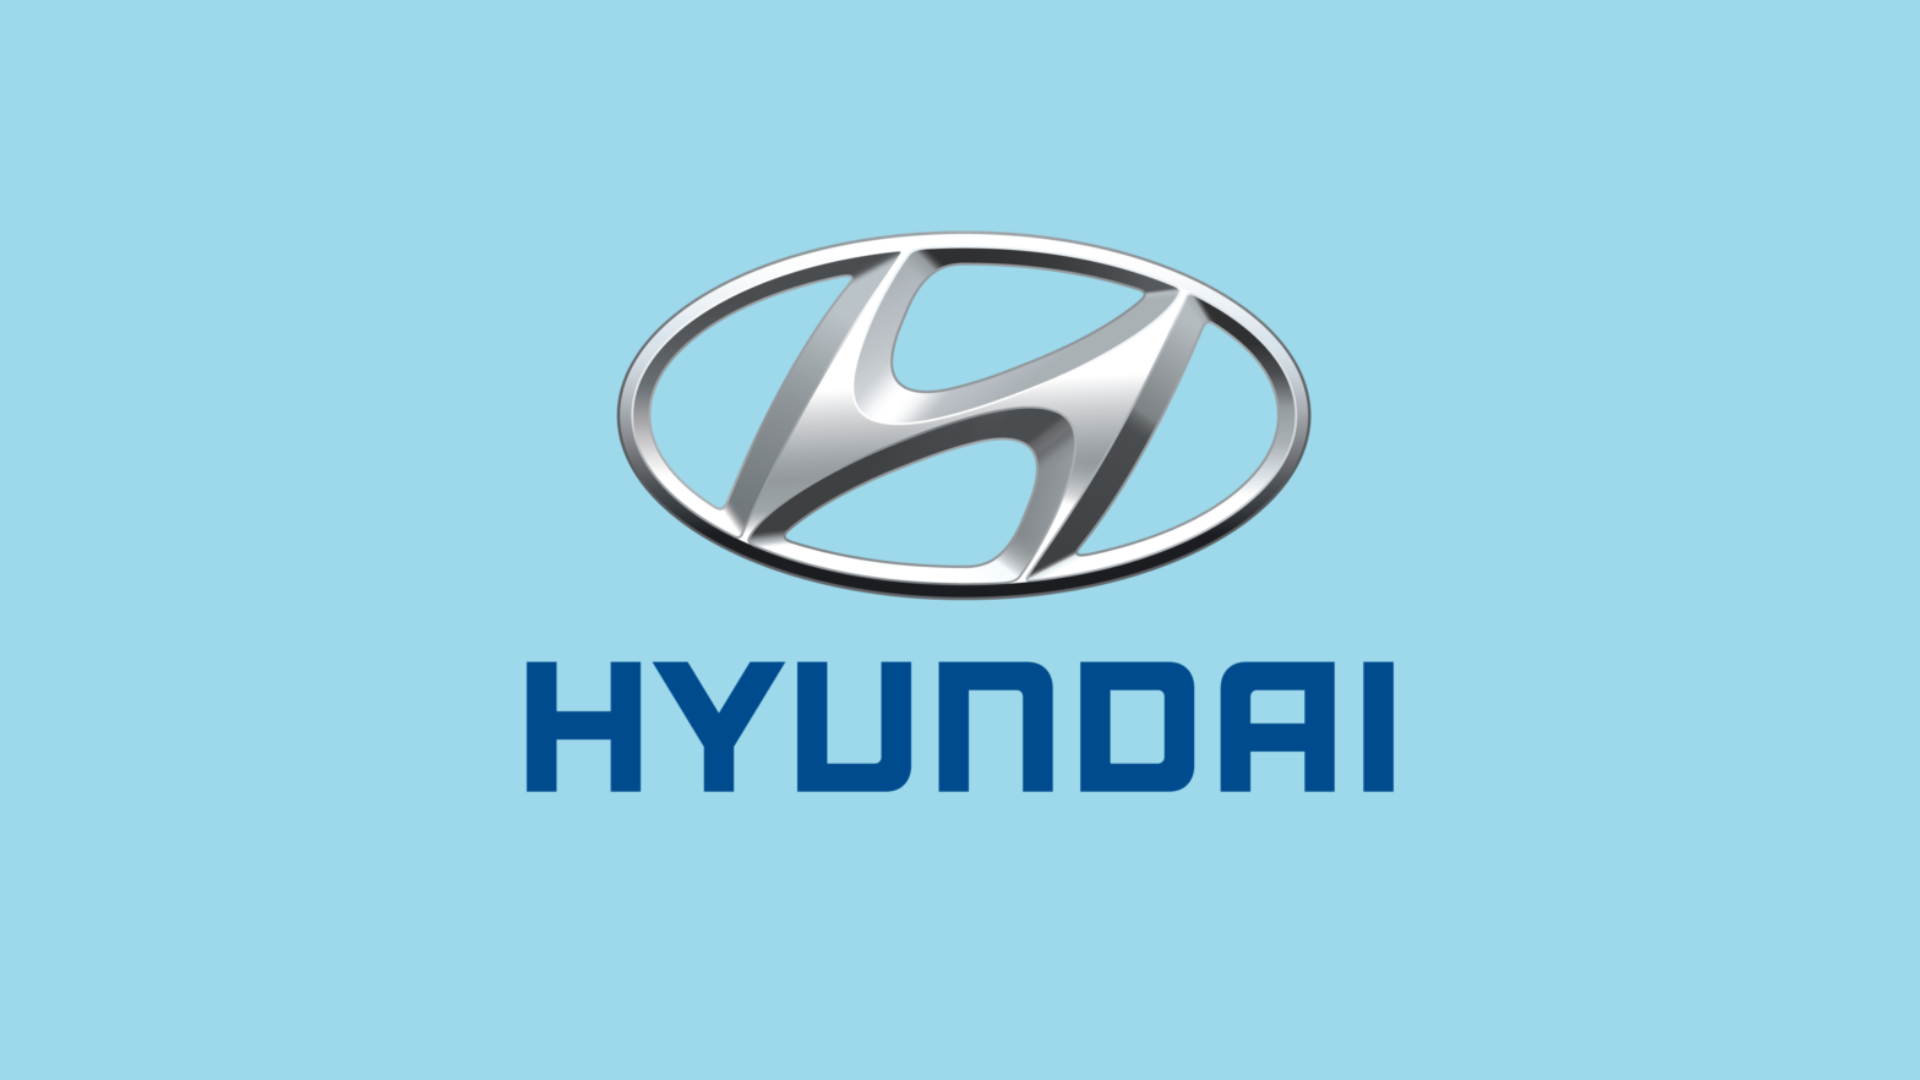 Hyundai Motor Europe enfrenta ataque de ransomware de Black Basta